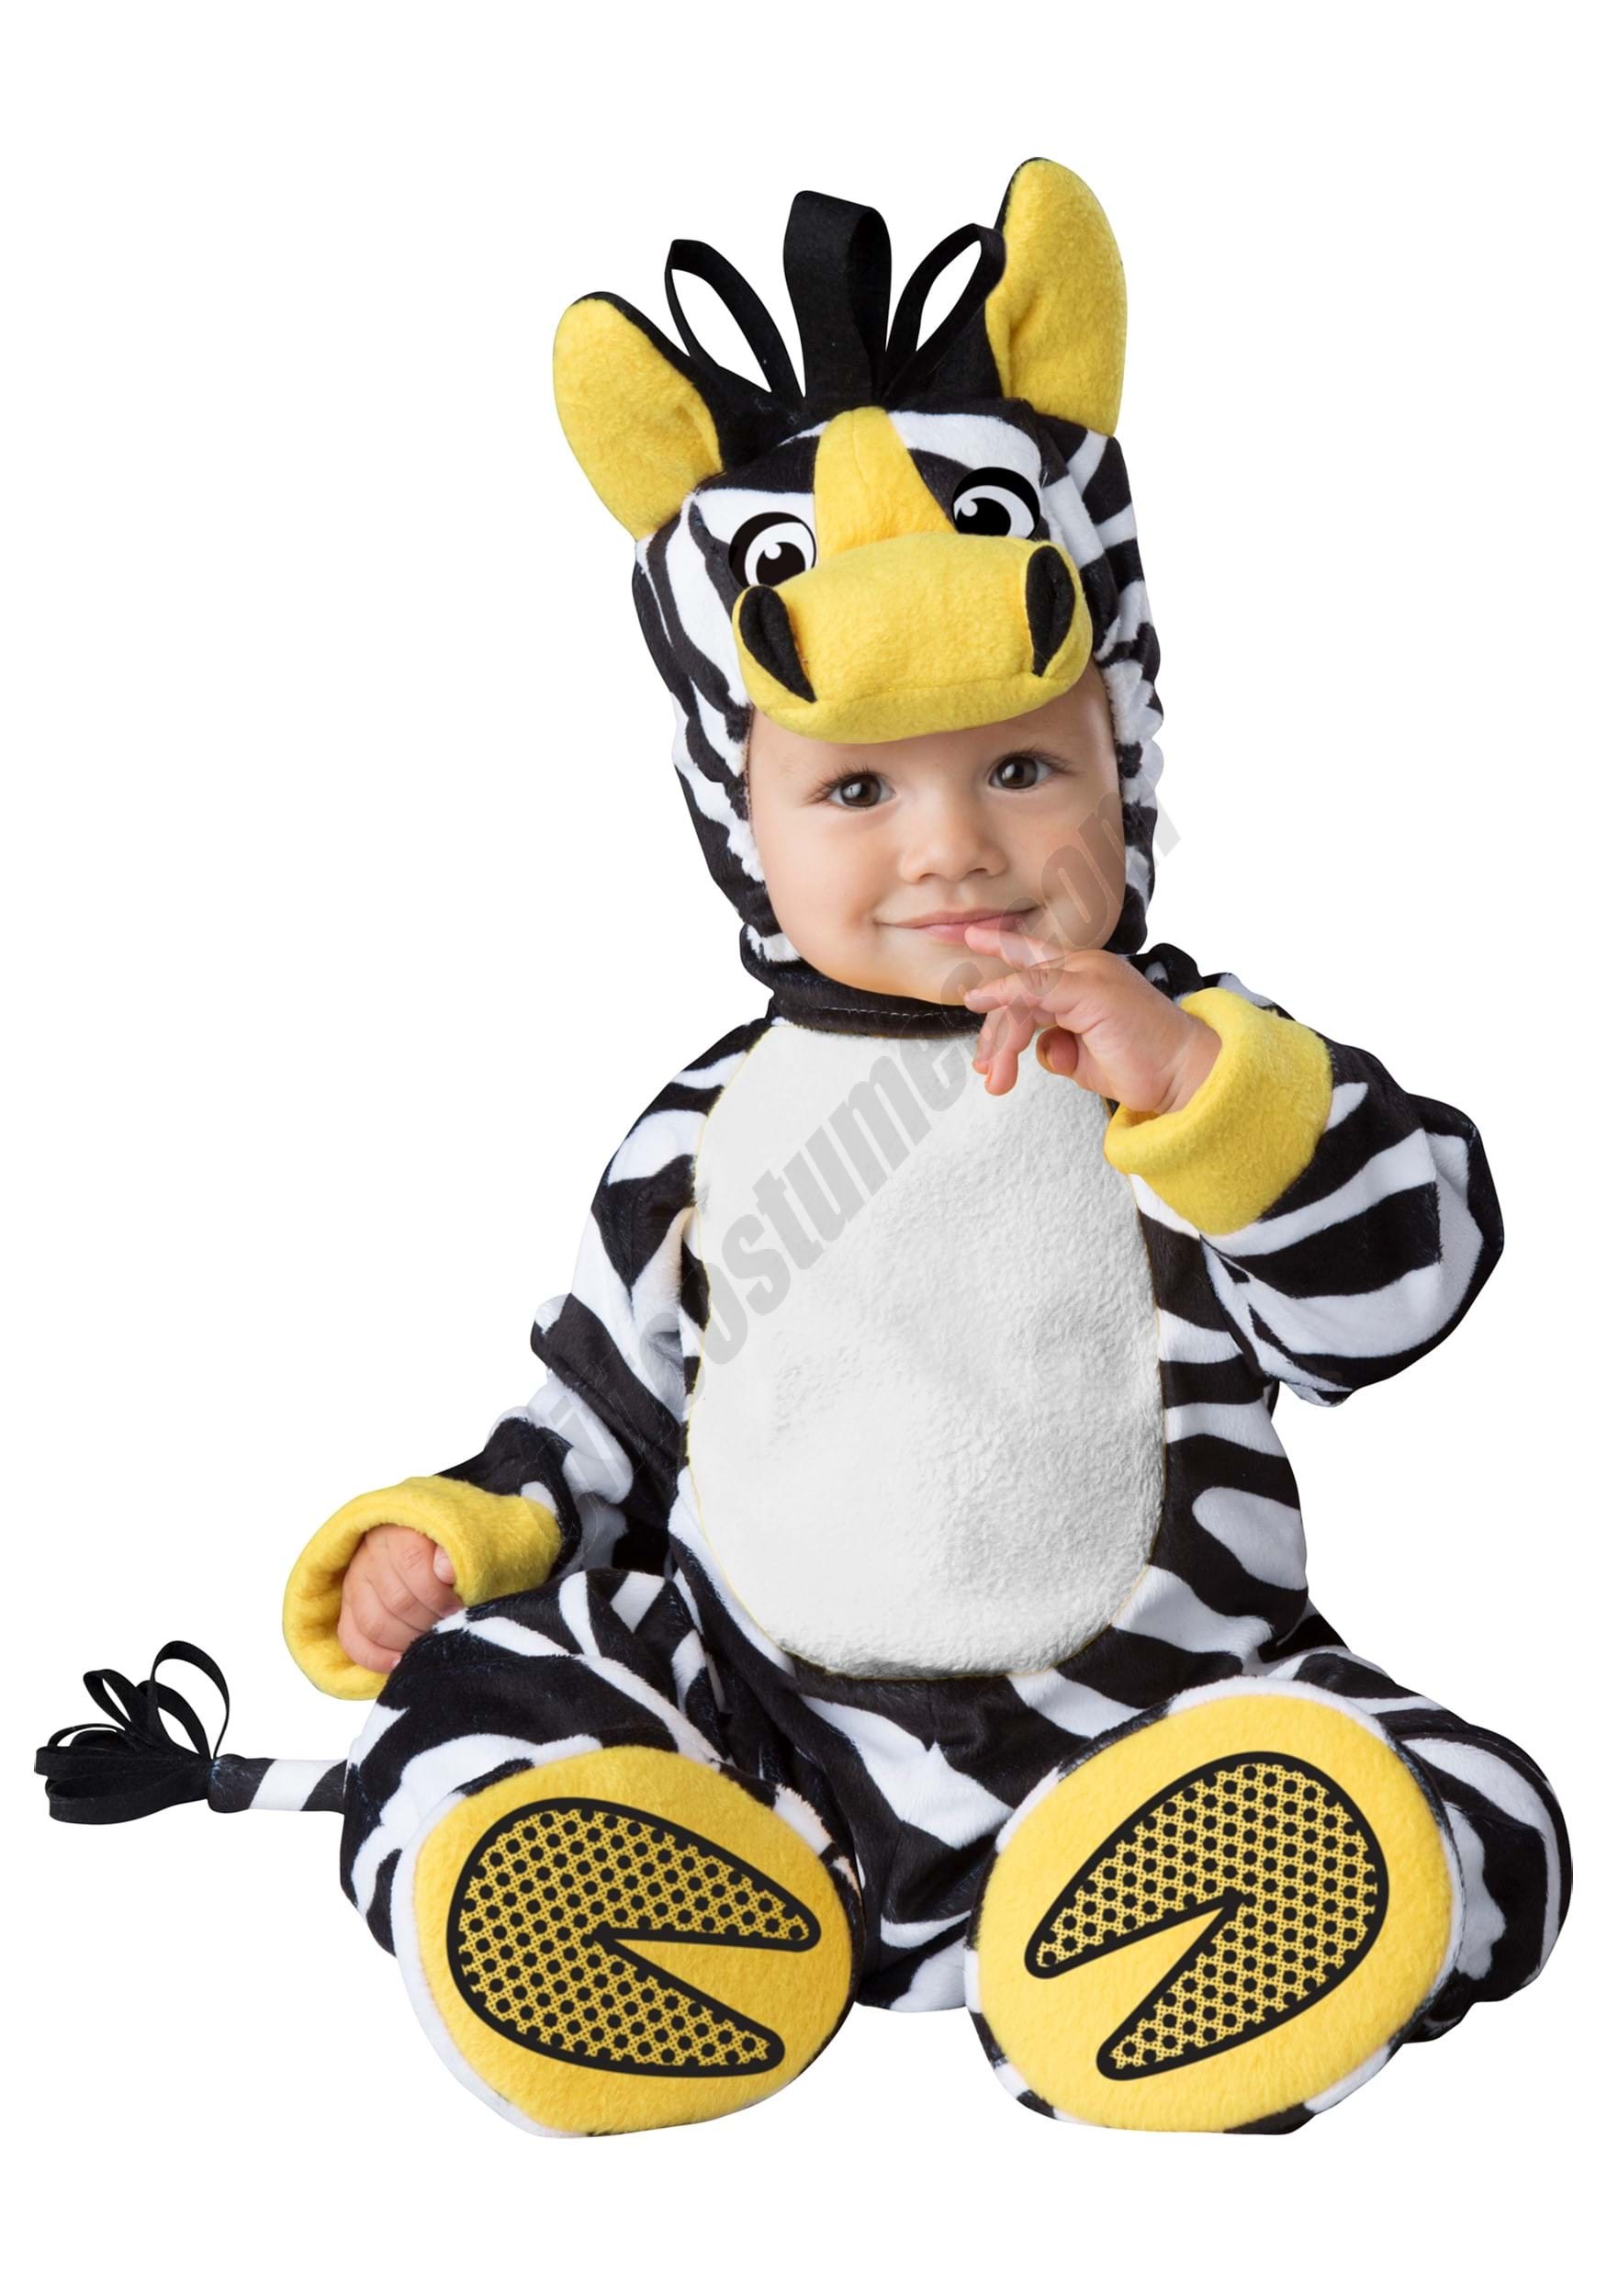 Infant Zany Zebra Costume Promotions - Infant Zany Zebra Costume Promotions